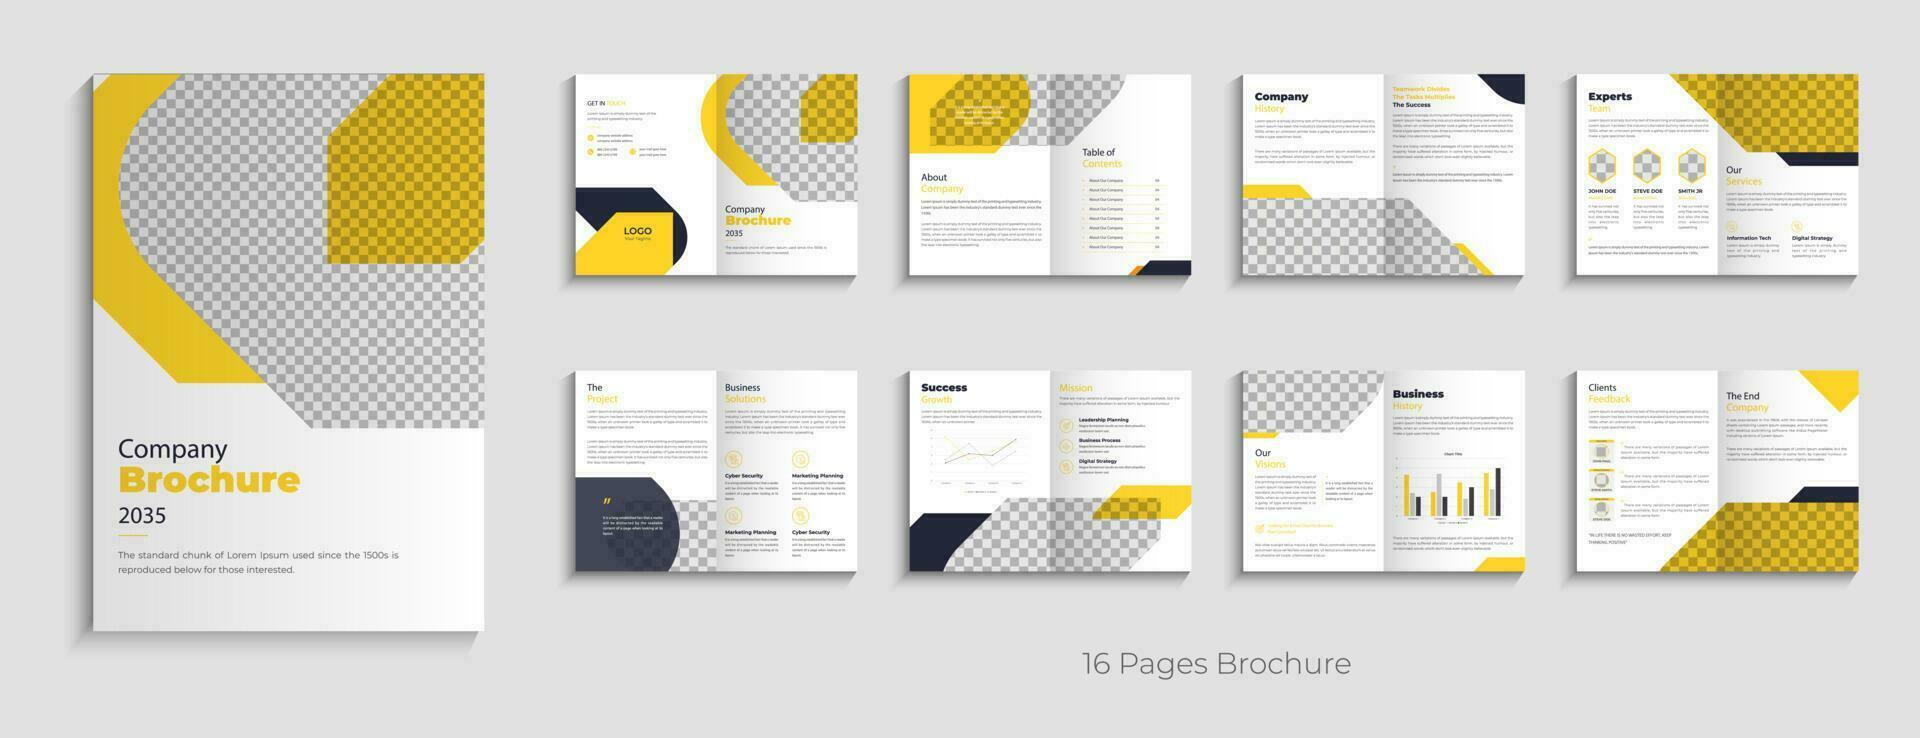 creativo empresa perfil moderno negocio folleto modelo diseño diseño folleto modelo diseño vector